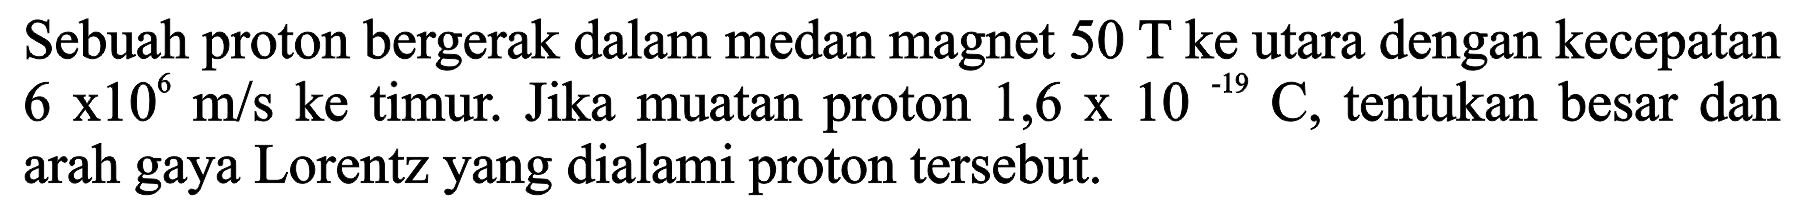 Sebuah proton bergerak dalam medan magnet 50 T ke utara dengan kecepatan 6 x 10^6 m/s ke timur. Jika muatan proton 1,6 x 10^(-19) C, tentukan besar dan arah gaya Lorentz yang dialami proton tersebut.